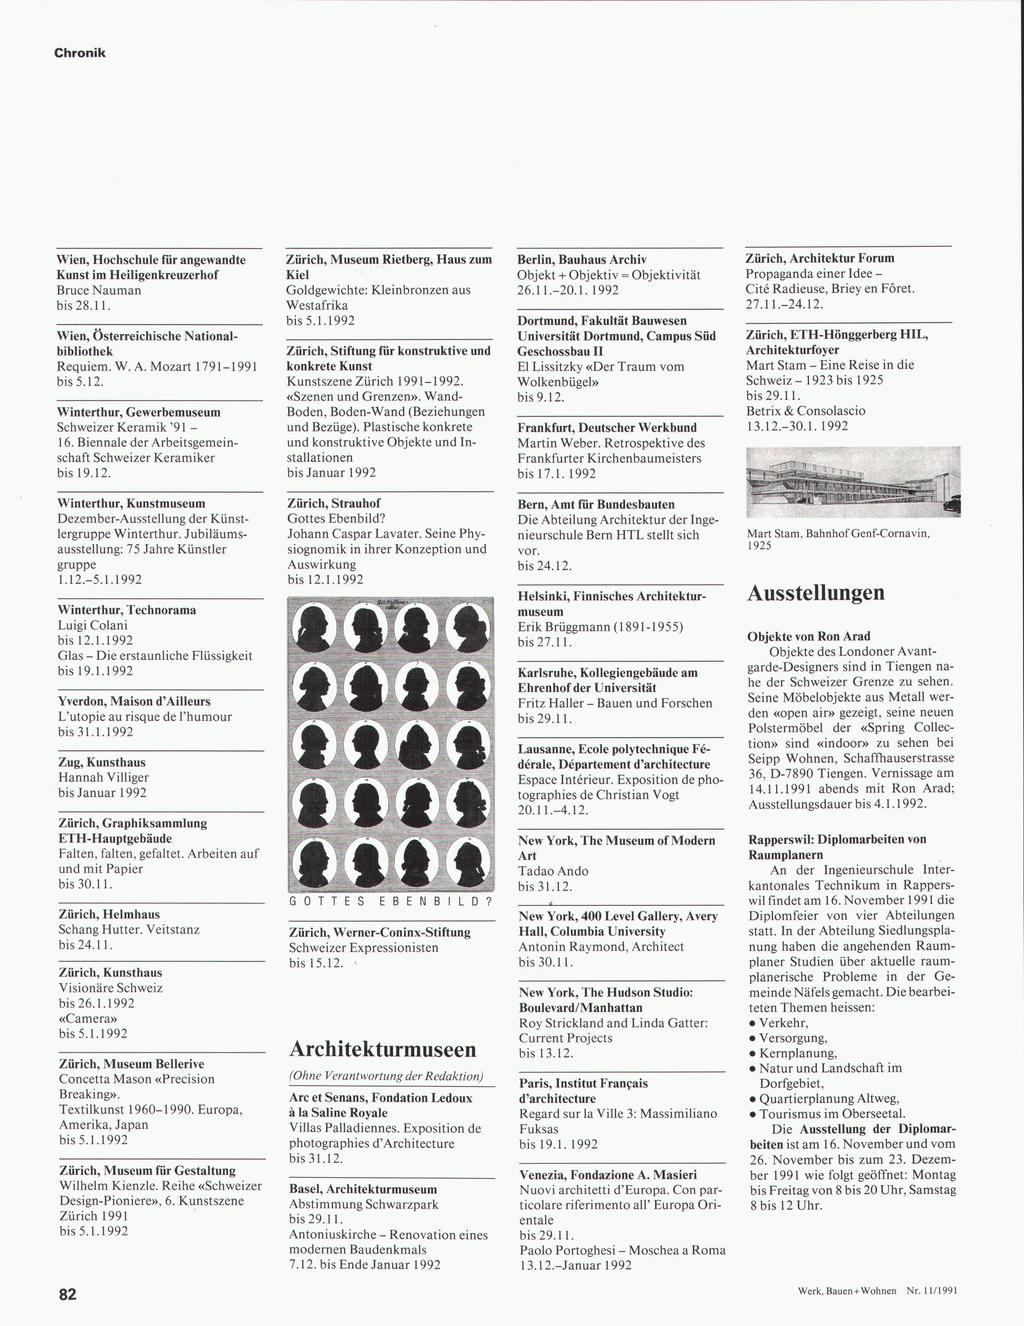 Wien, Hochschule für angewandte Kunst im Heiligenkreuzerhof Bruce Nauman bis 28.11. Wien, Österreichische National bibliothek Requiem. W. A. Mozart 1791-1991 bis 5.12.